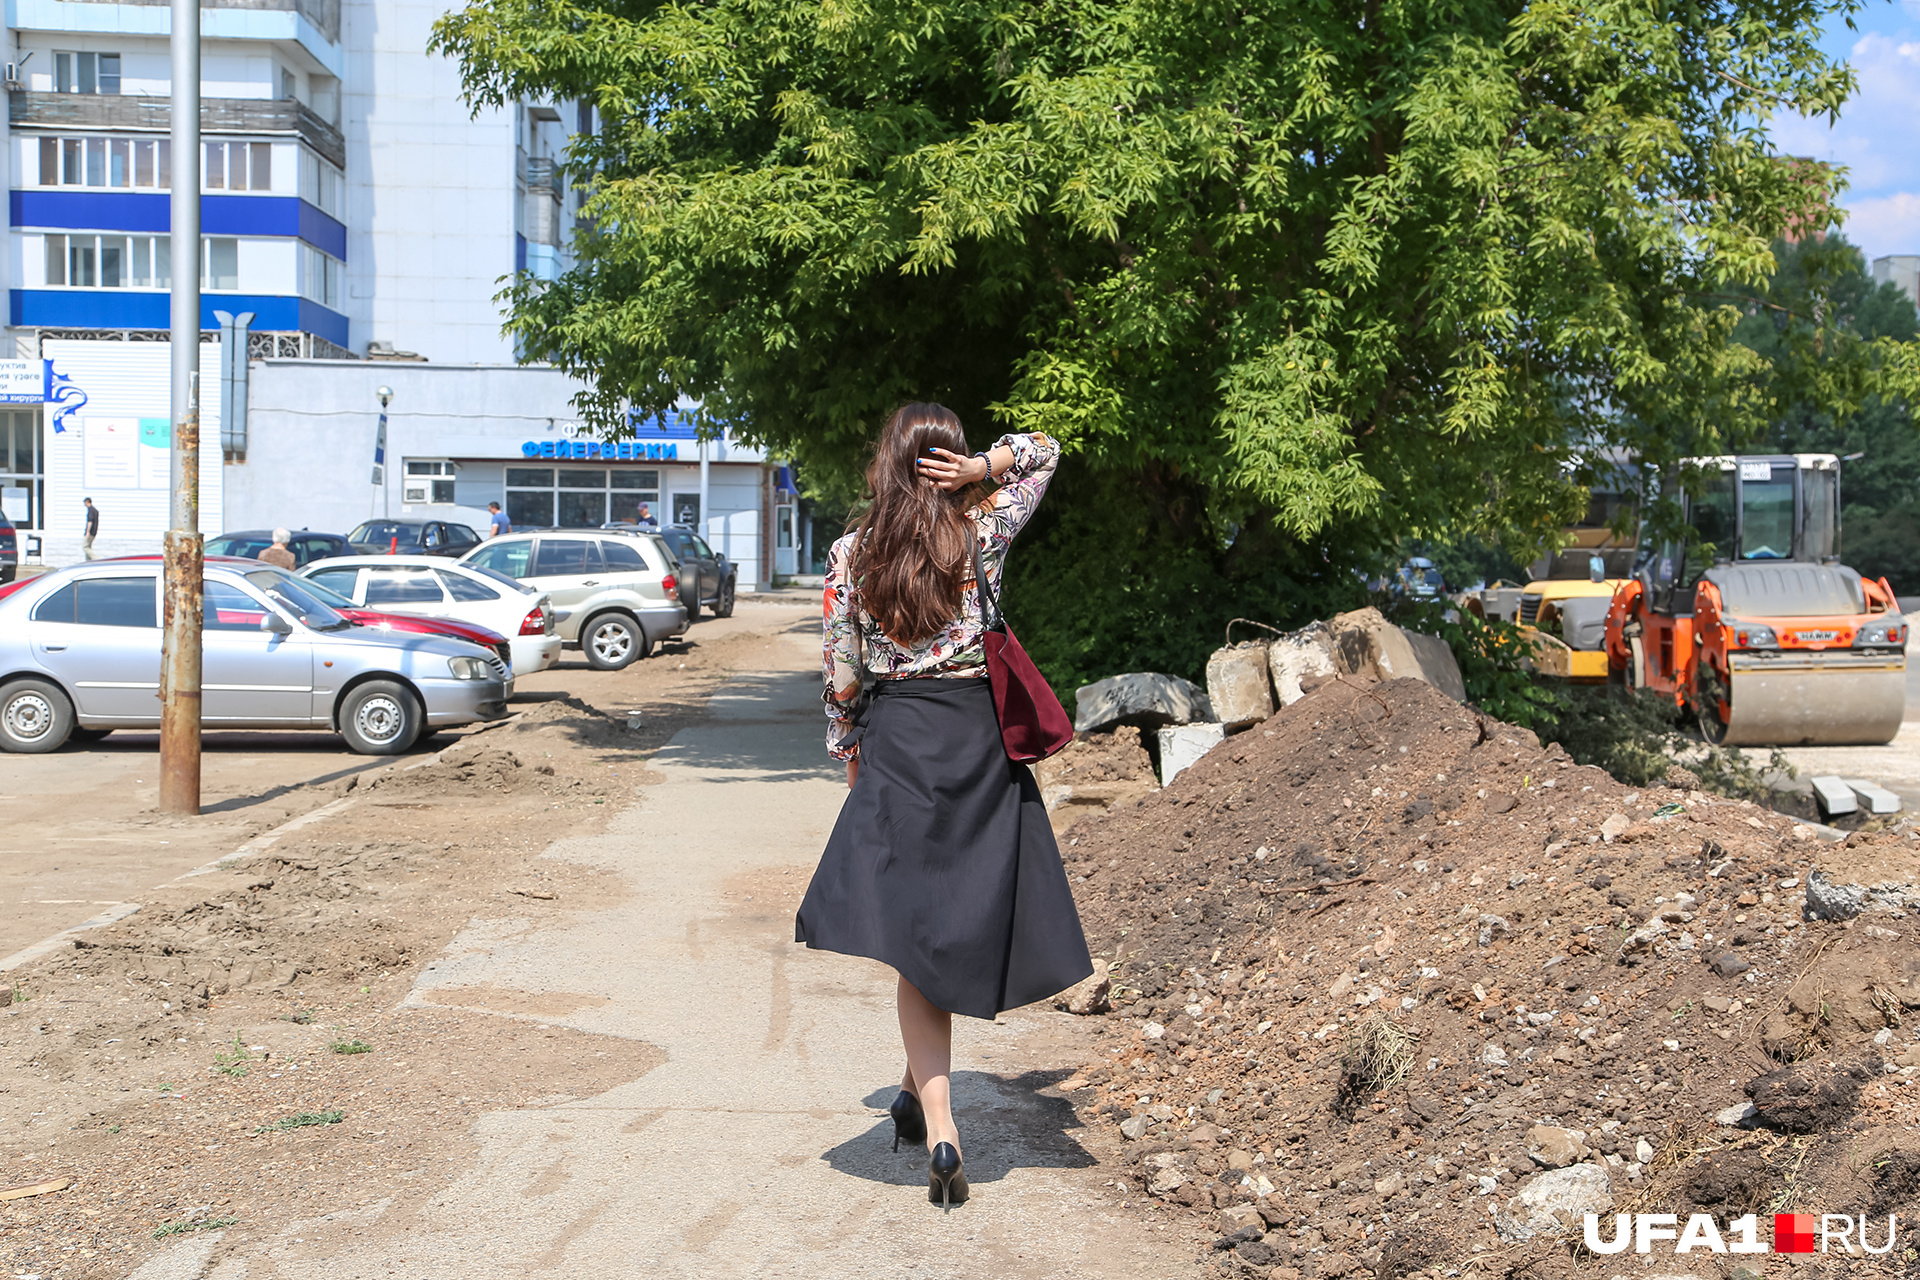 Девушкам приходится на Комсомольской нелегко, особенно — на каблуках